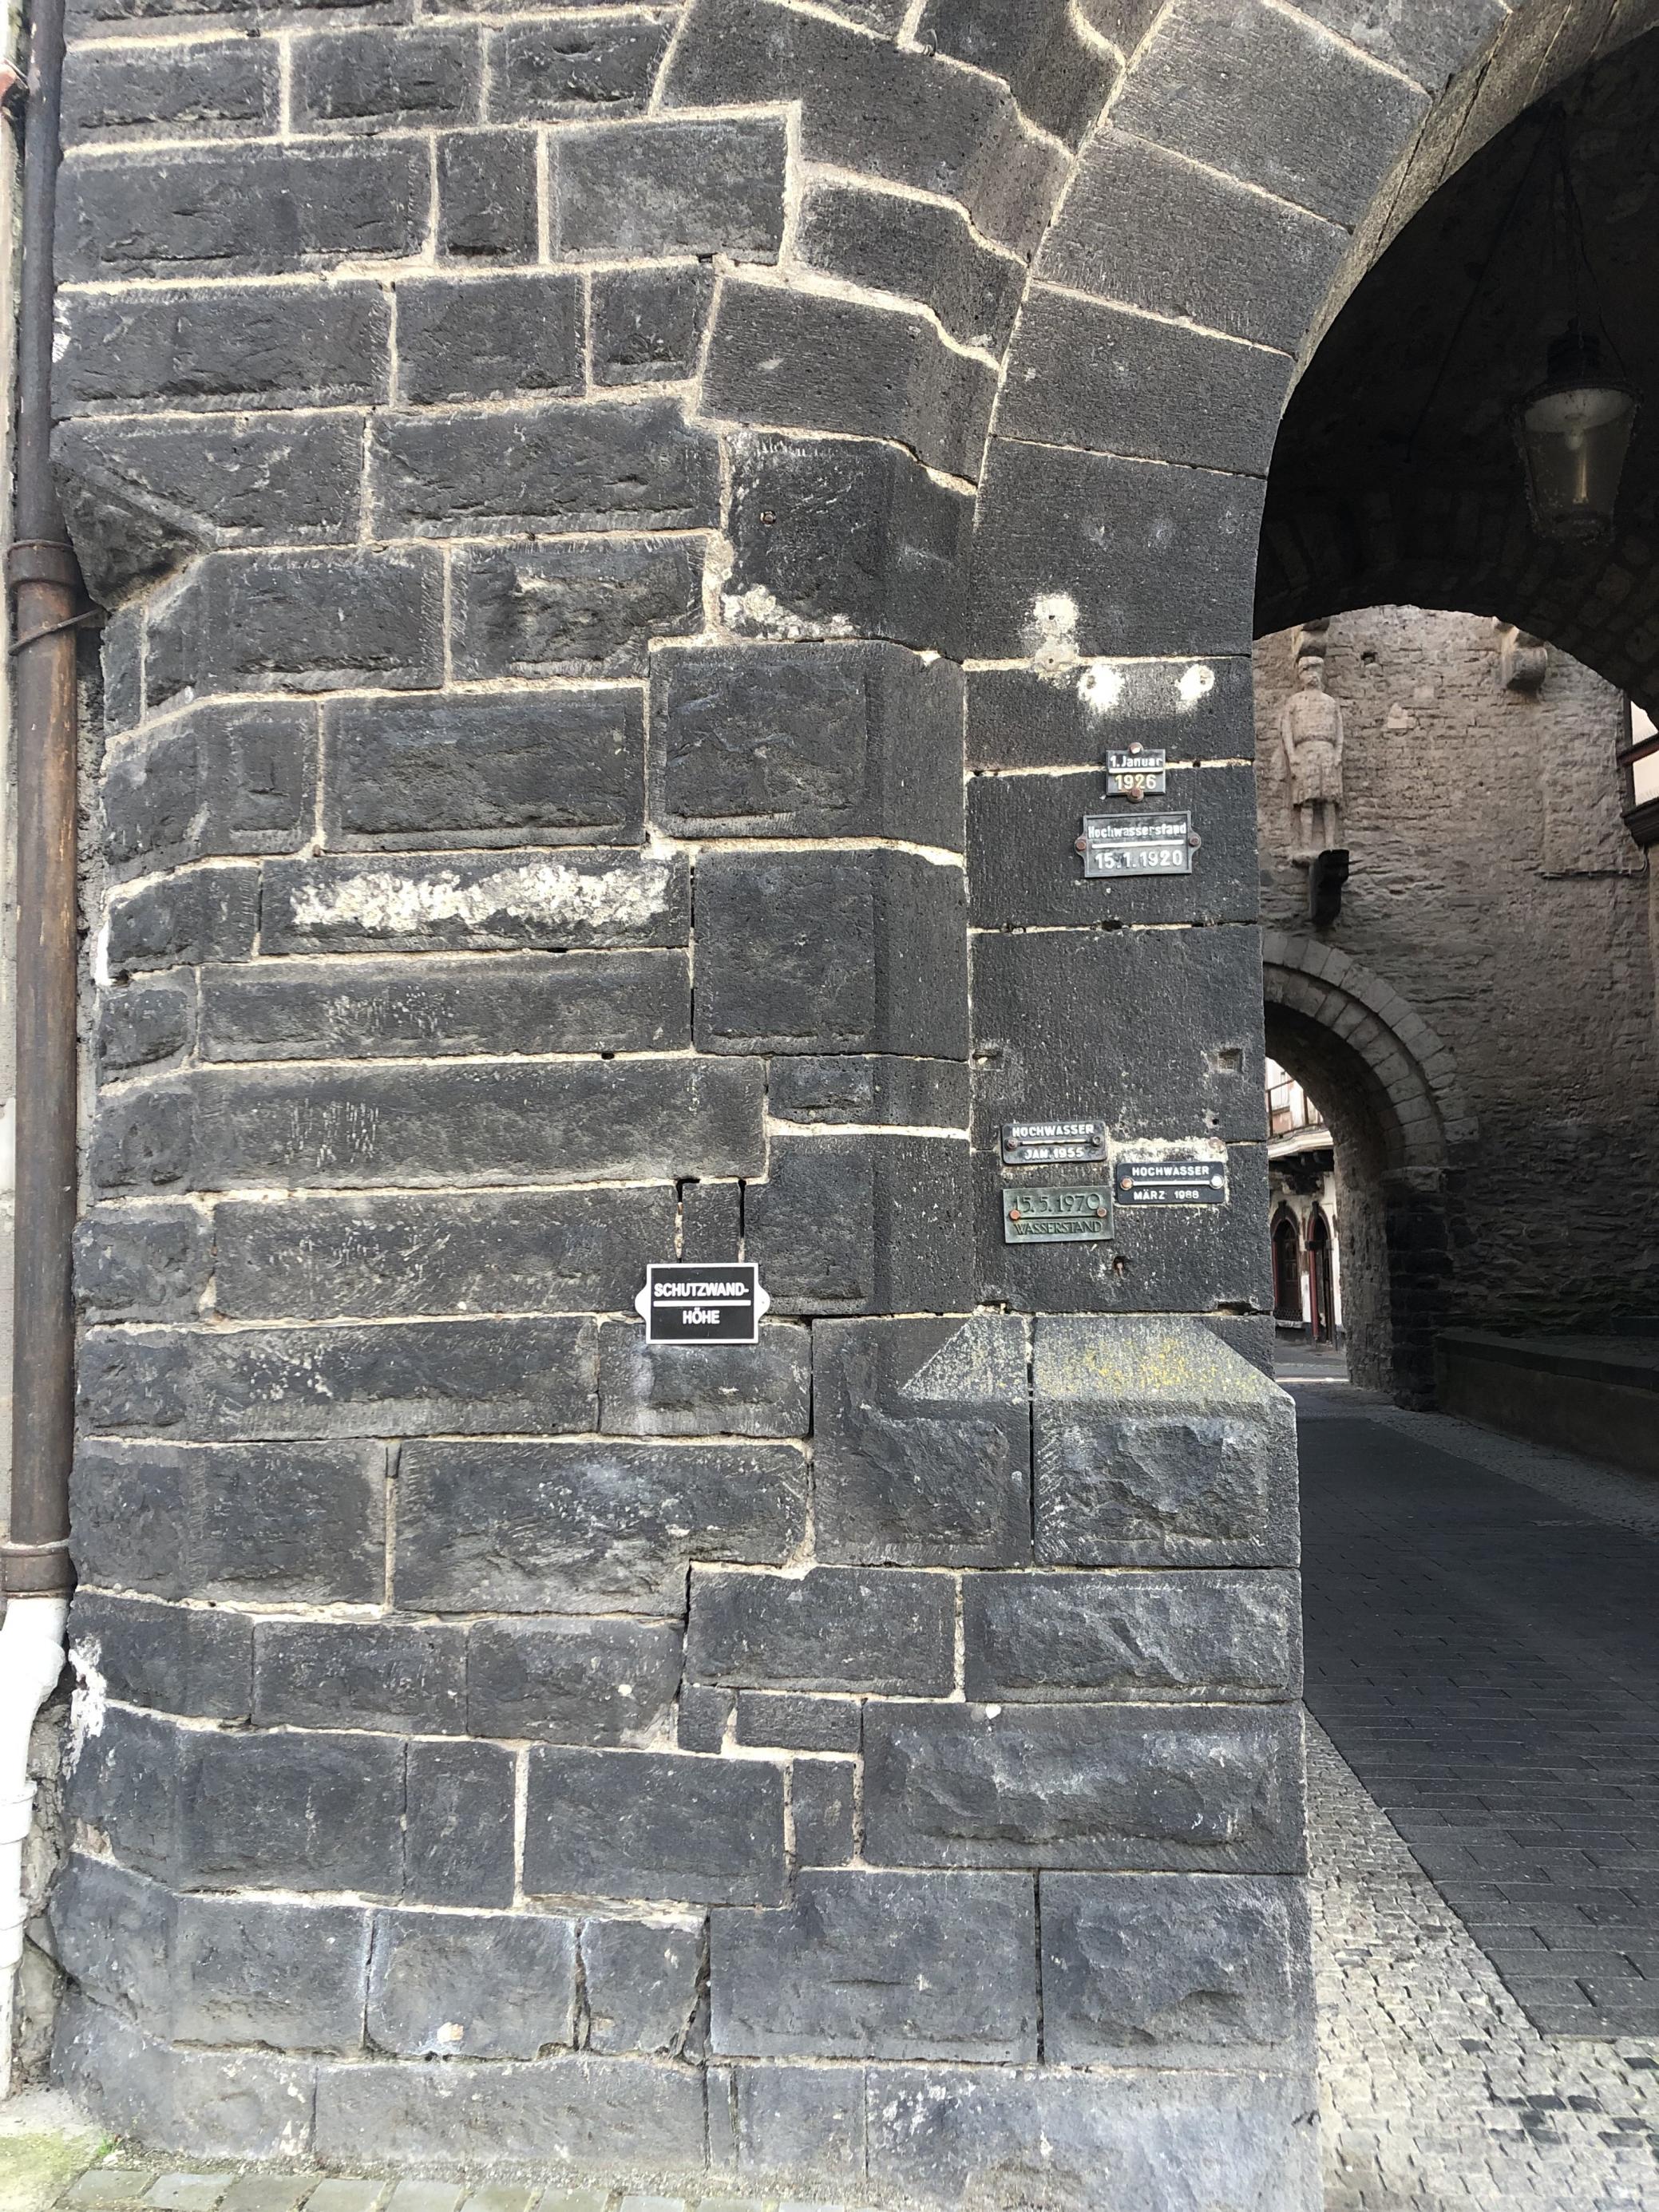 Die Hochwassermarken am alten Stadttor in Andernach am Mittelrhein zeigen, dass fünf Hochwasser-Ereignisse im 20. Jahrhundert die Höhe der Schutzmauer weit übertrafen. Die Höhe der Schutzmauer ist am Stadttor ebenfalls vermerkt.